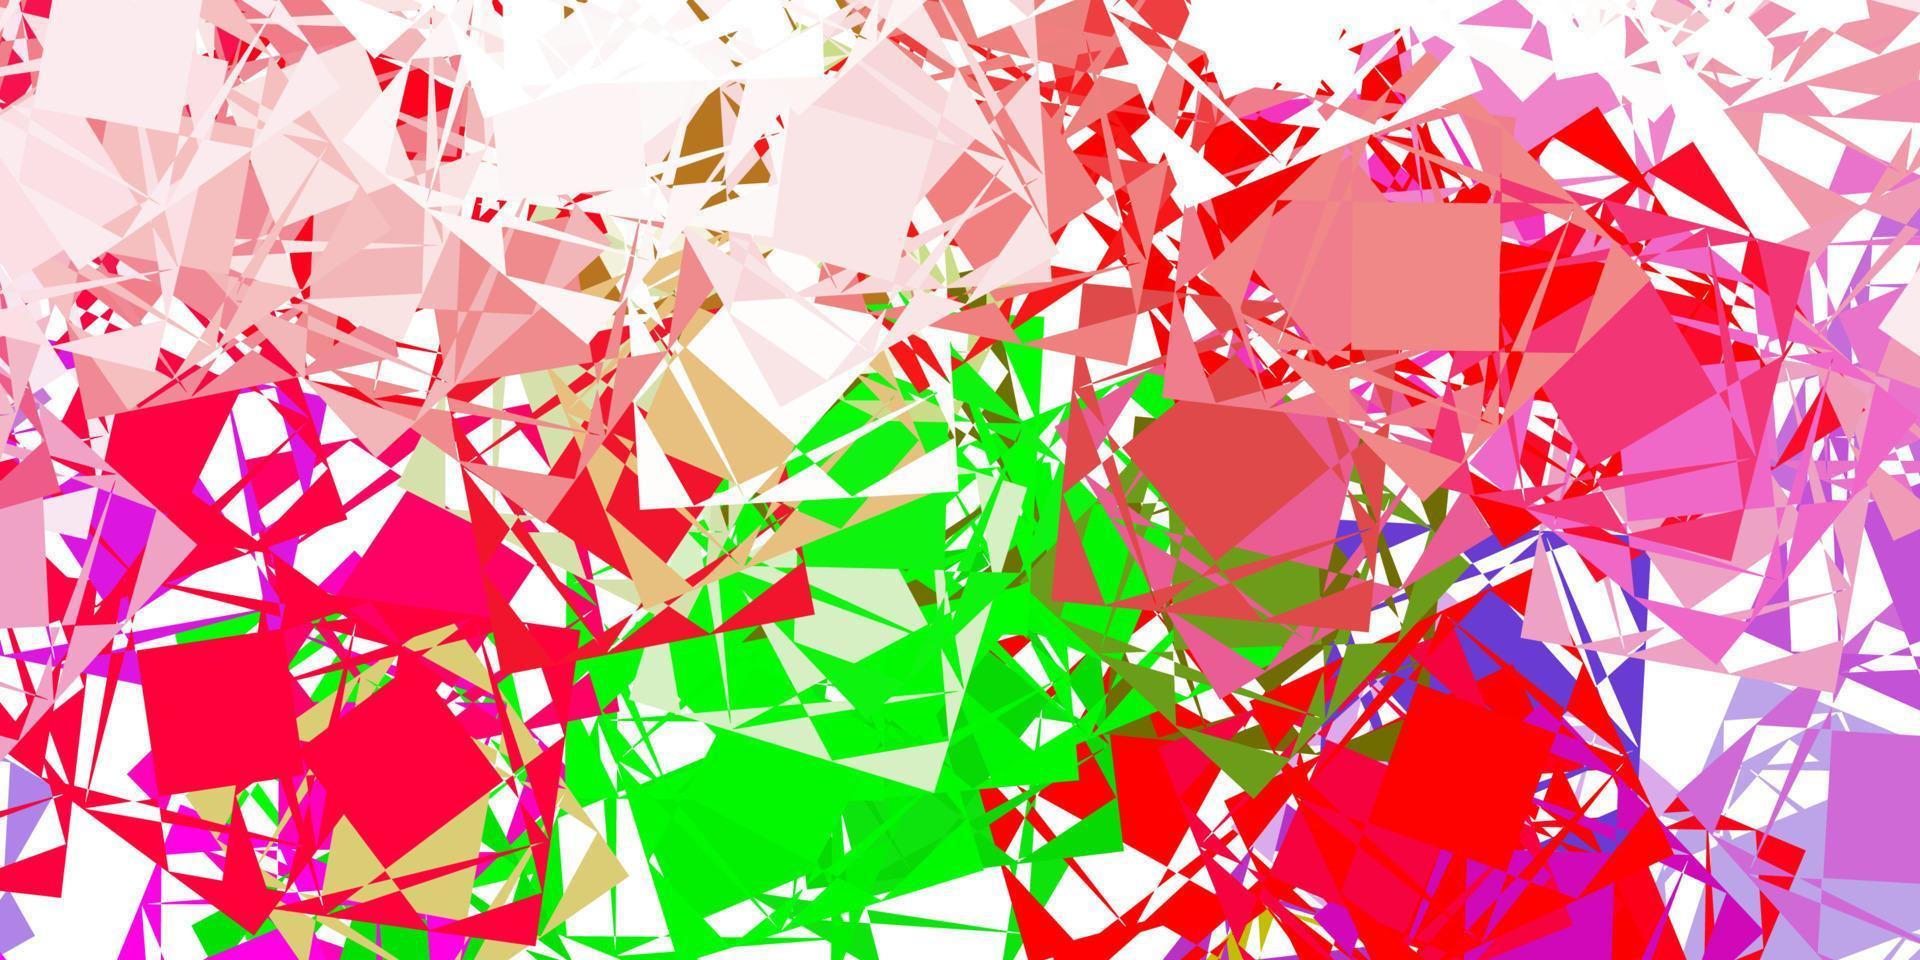 textura de vector rosa claro, verde con triángulos al azar.